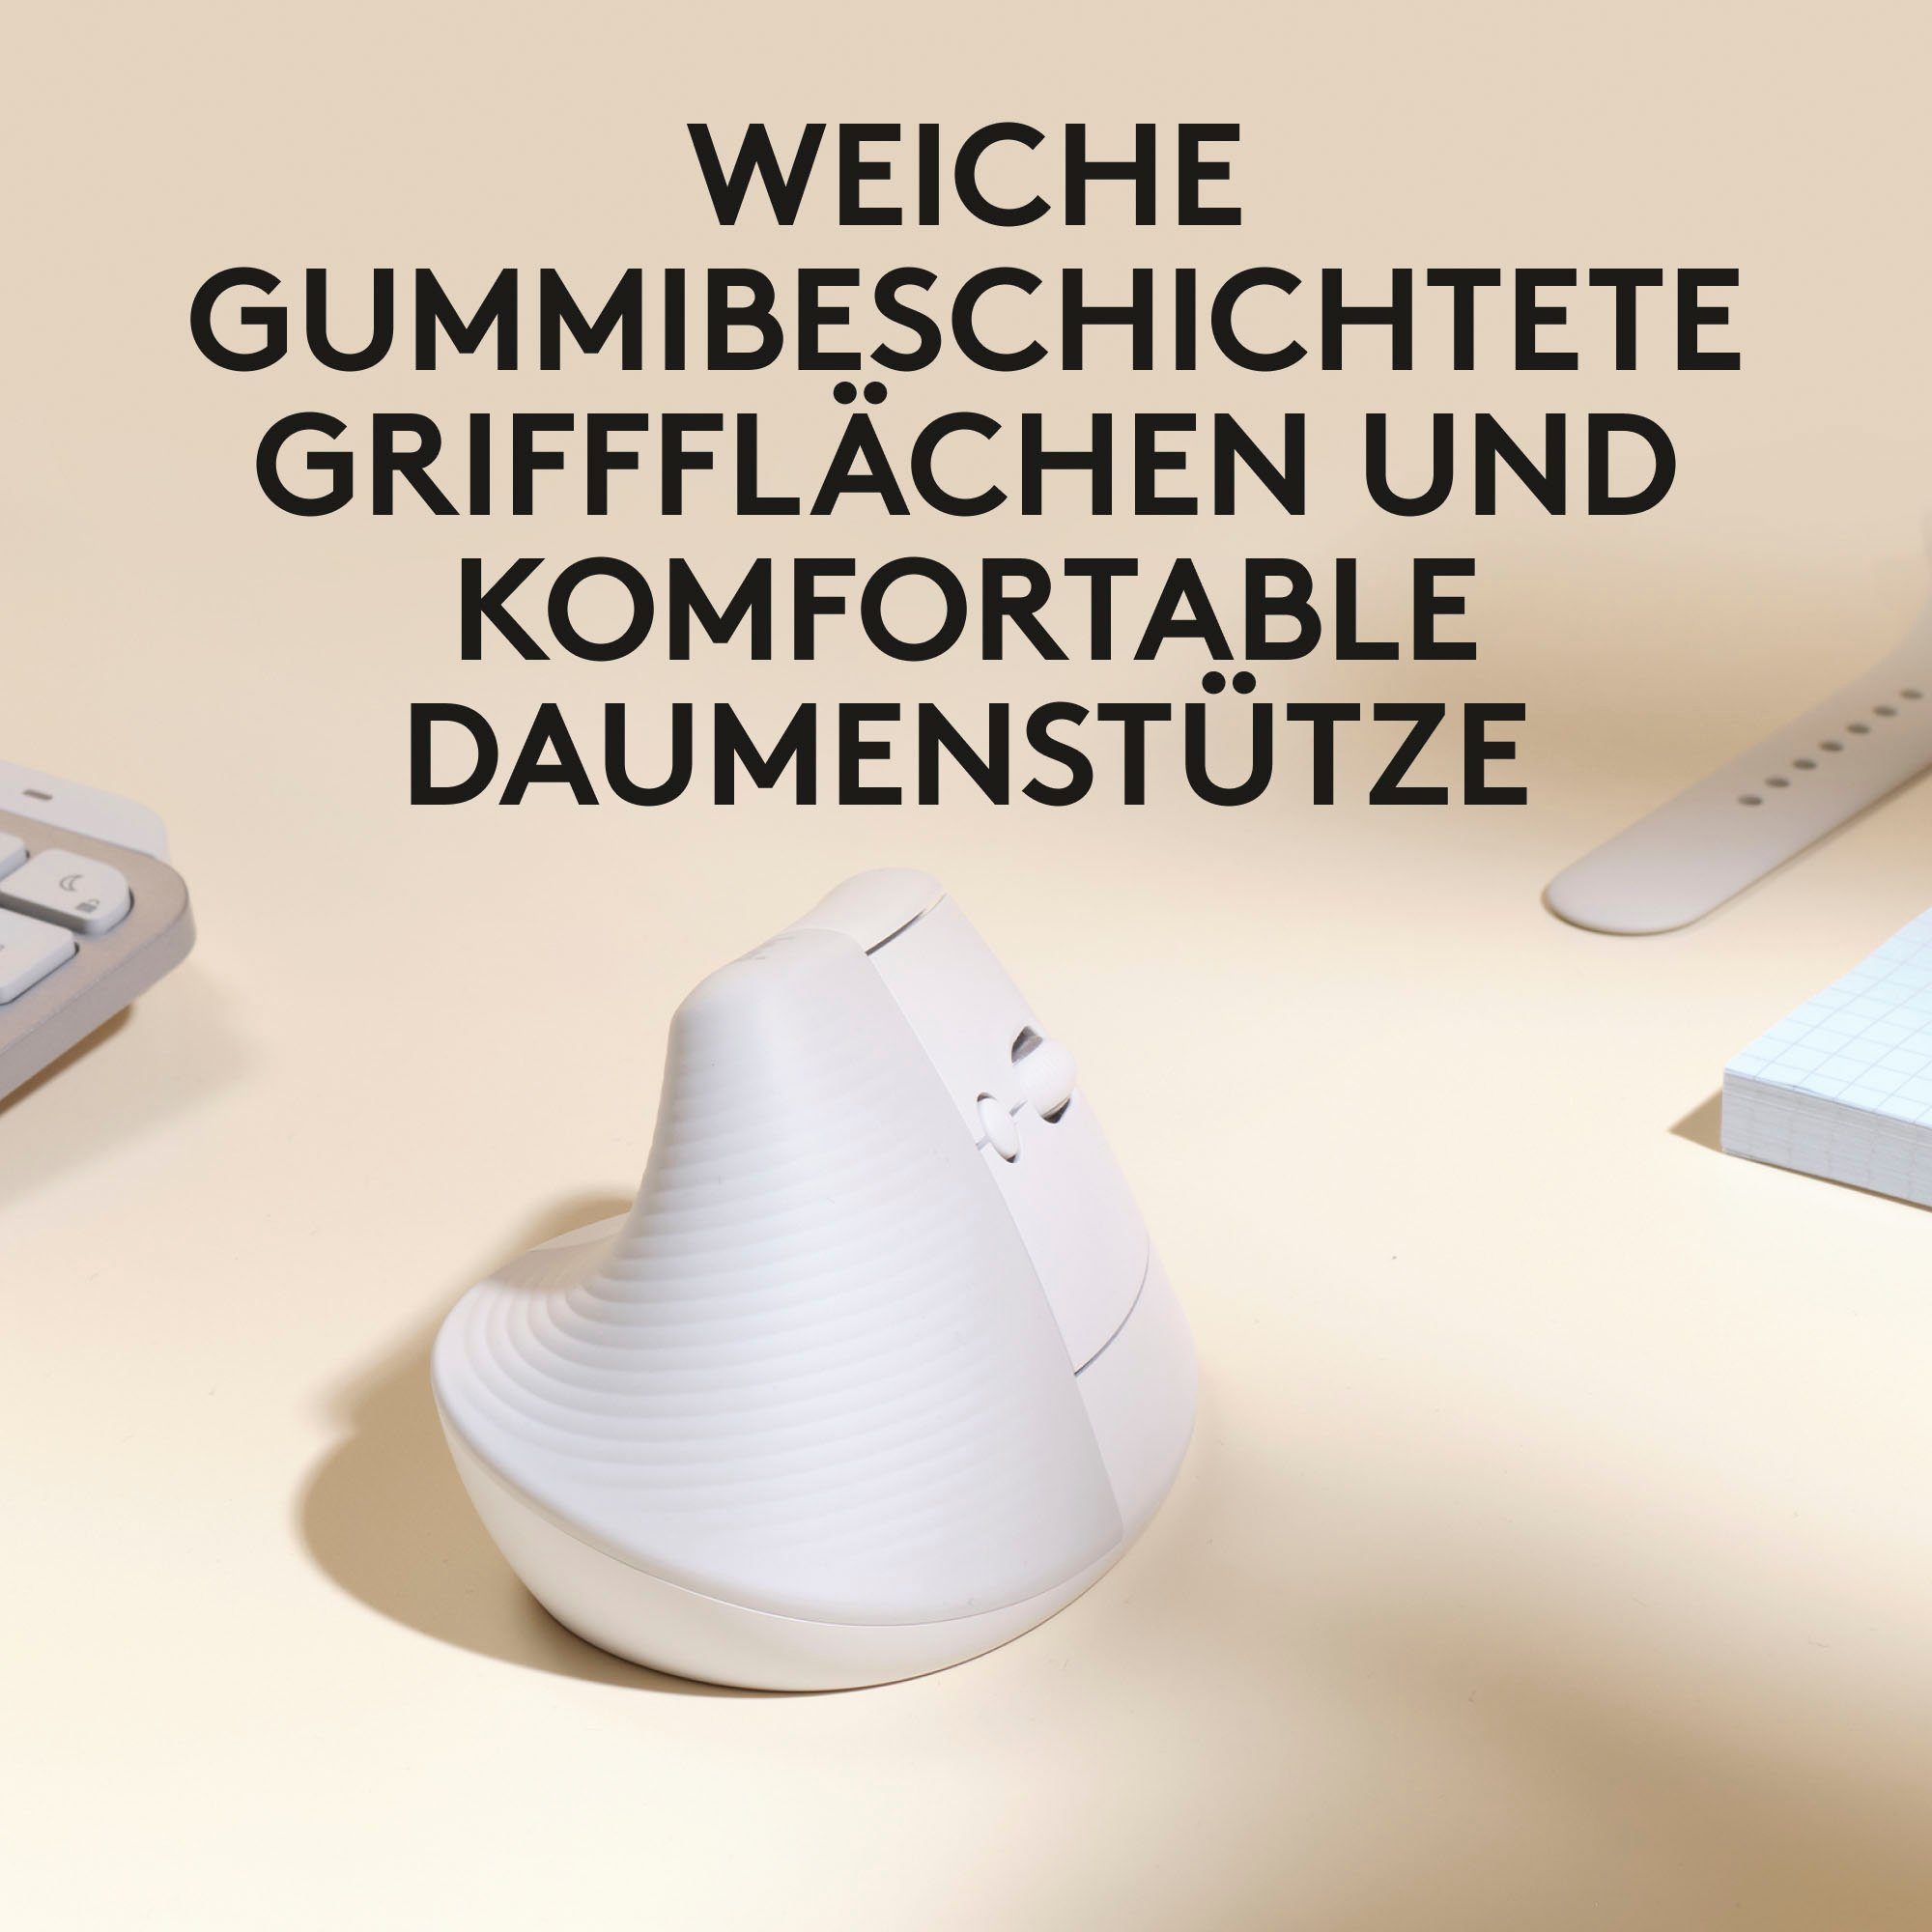 Logitech Maus ergonomische Vertical Mac (Bluetooth) Lift for